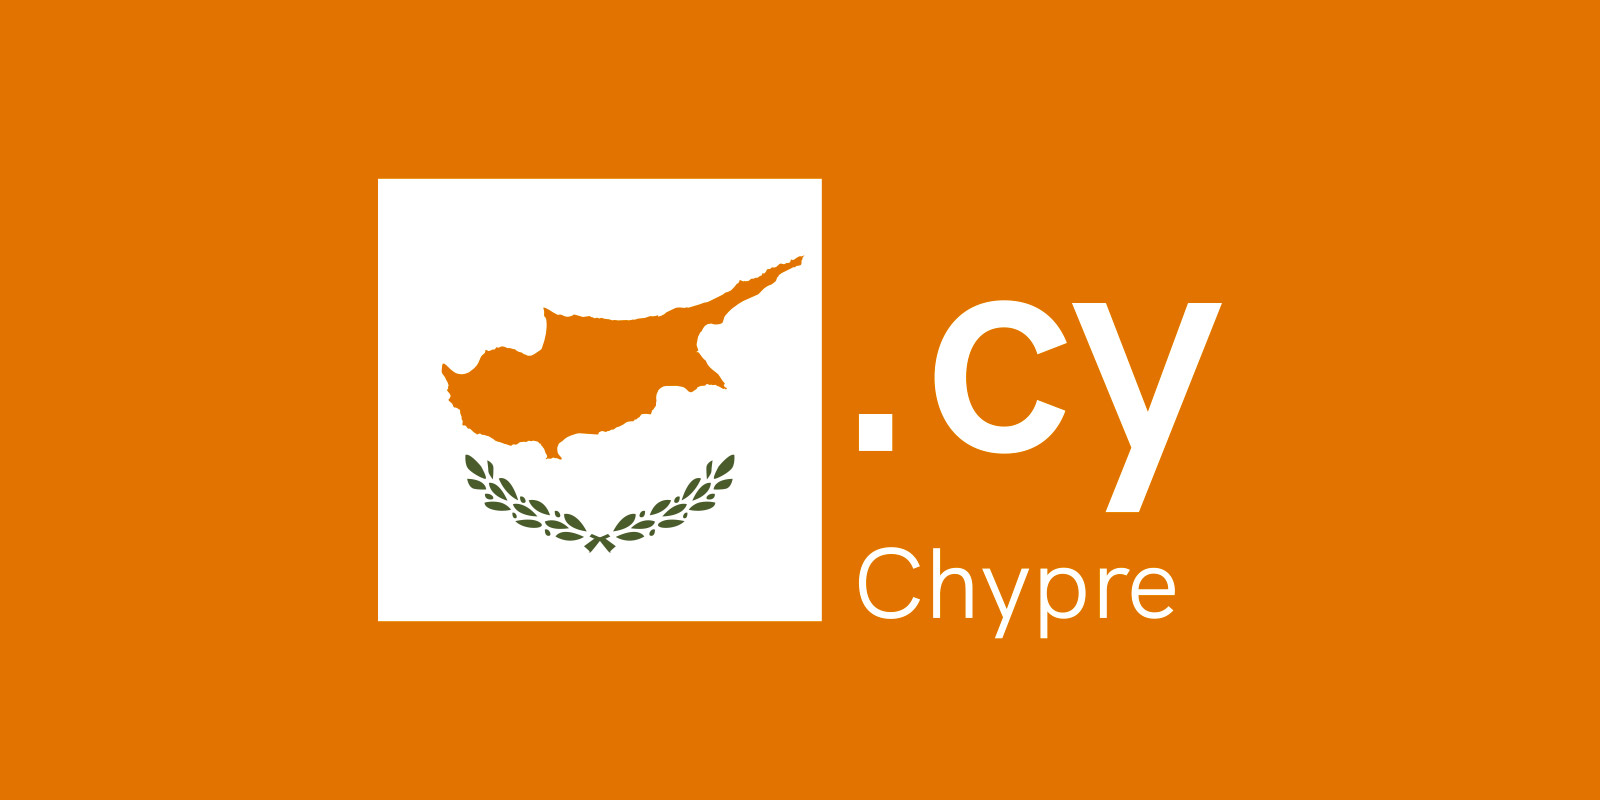 賽普勒斯（Cyprus）有自己的域名 — .CY  啦!